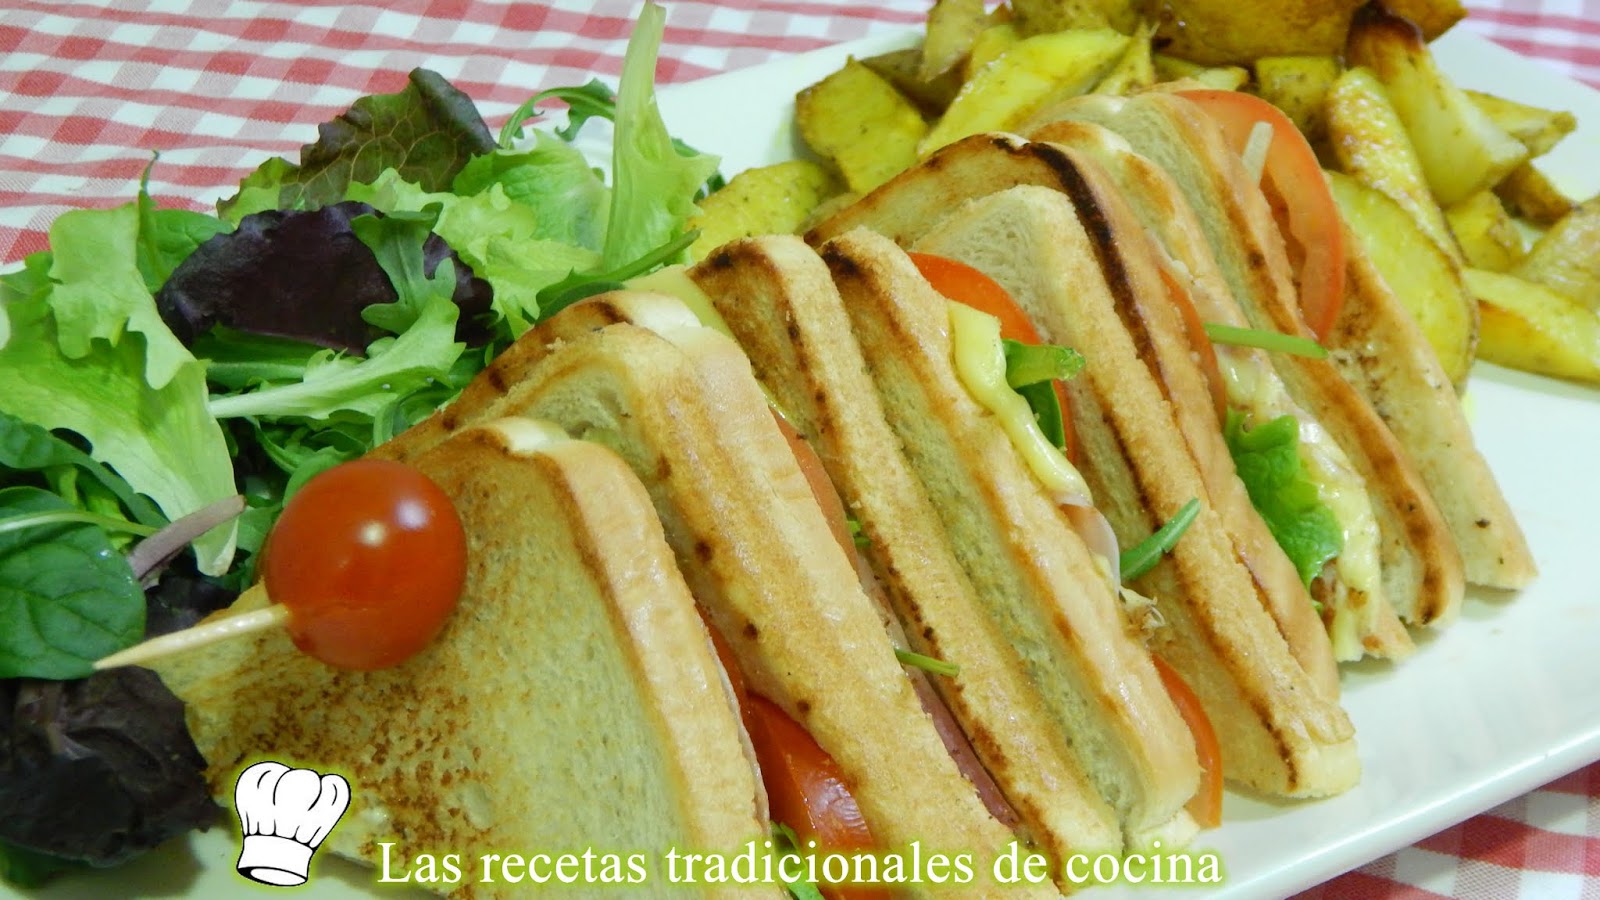 Sandwich Club Una Receta Muy Fácil Y Deliciosa Para Una Cena Muy Original
